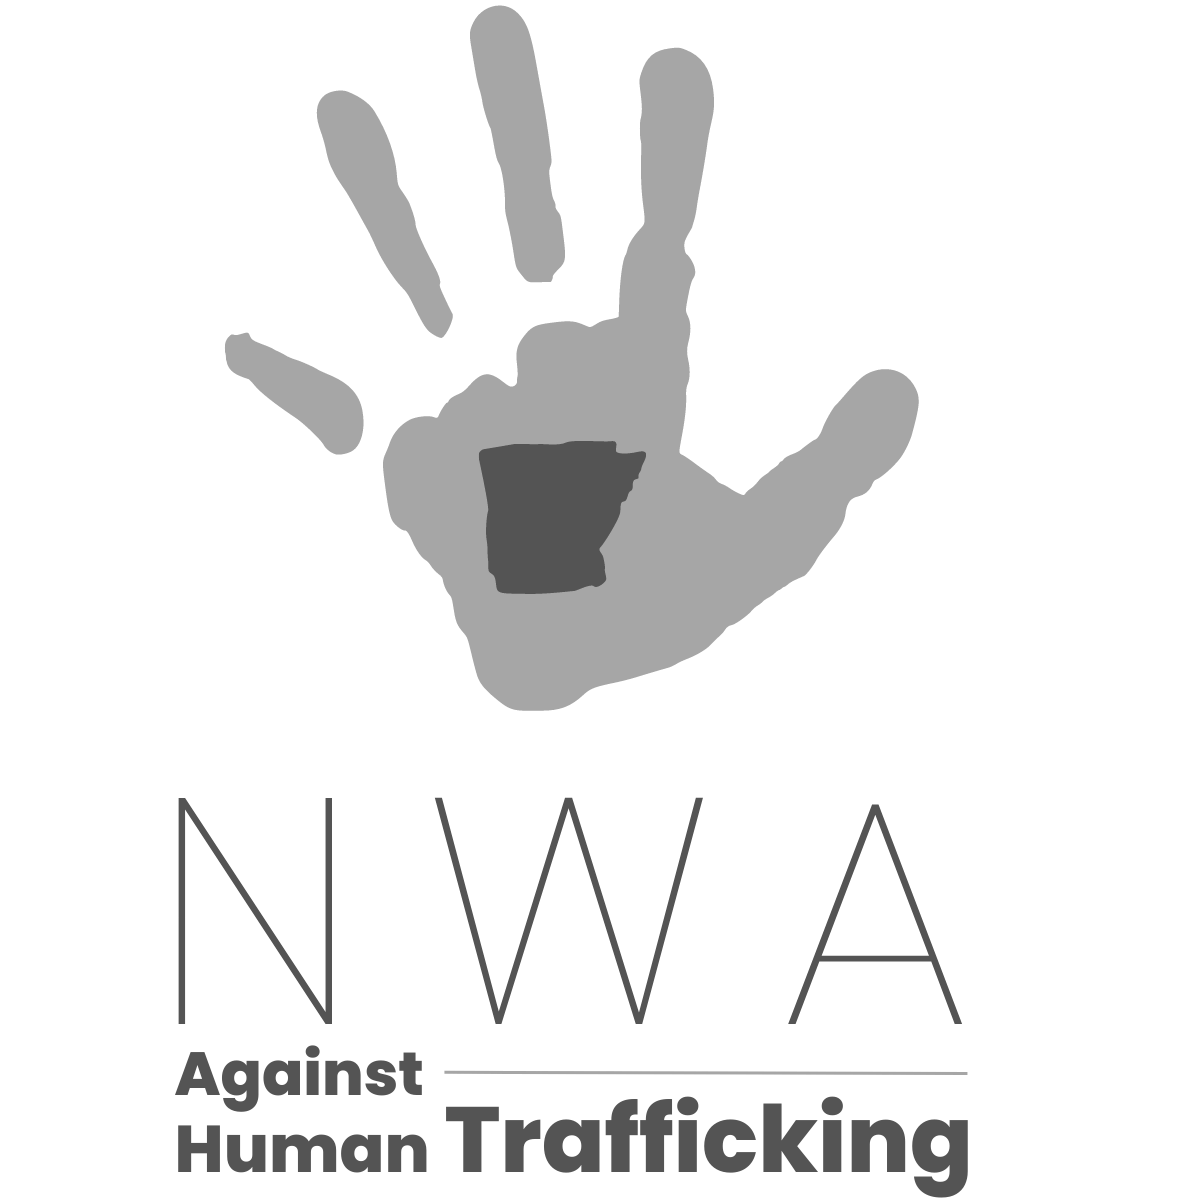 NWA Against Human Trafficking logo